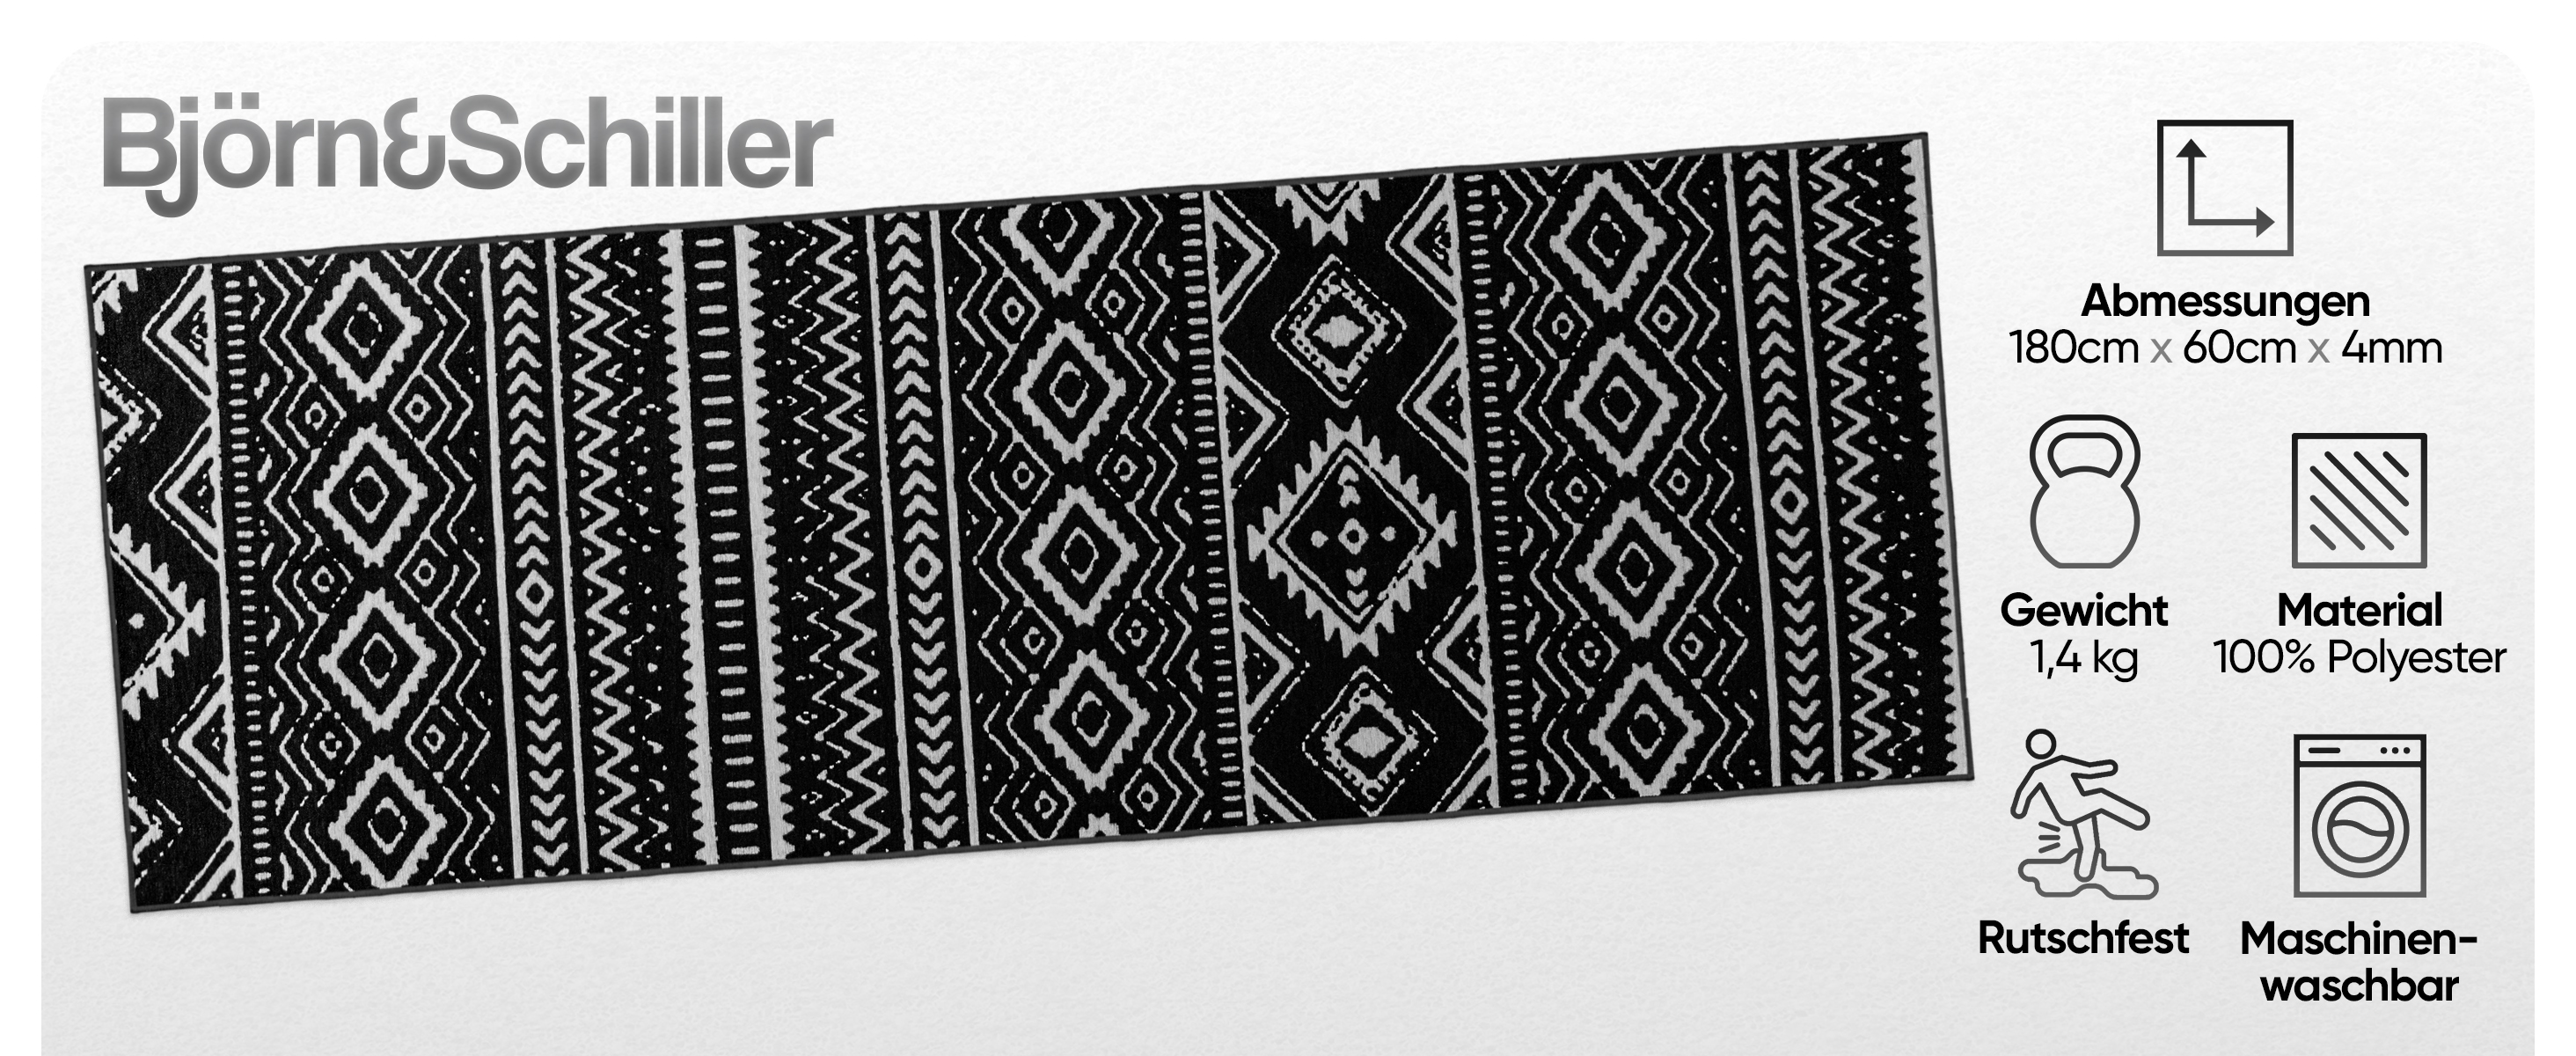 Björn&Schiller Teppichläufer 60x180 cm, rutschfester Teppich schwarz (Onyx Lattice) moderner Flurteppich lang, hochwertiger Küchenteppich-1